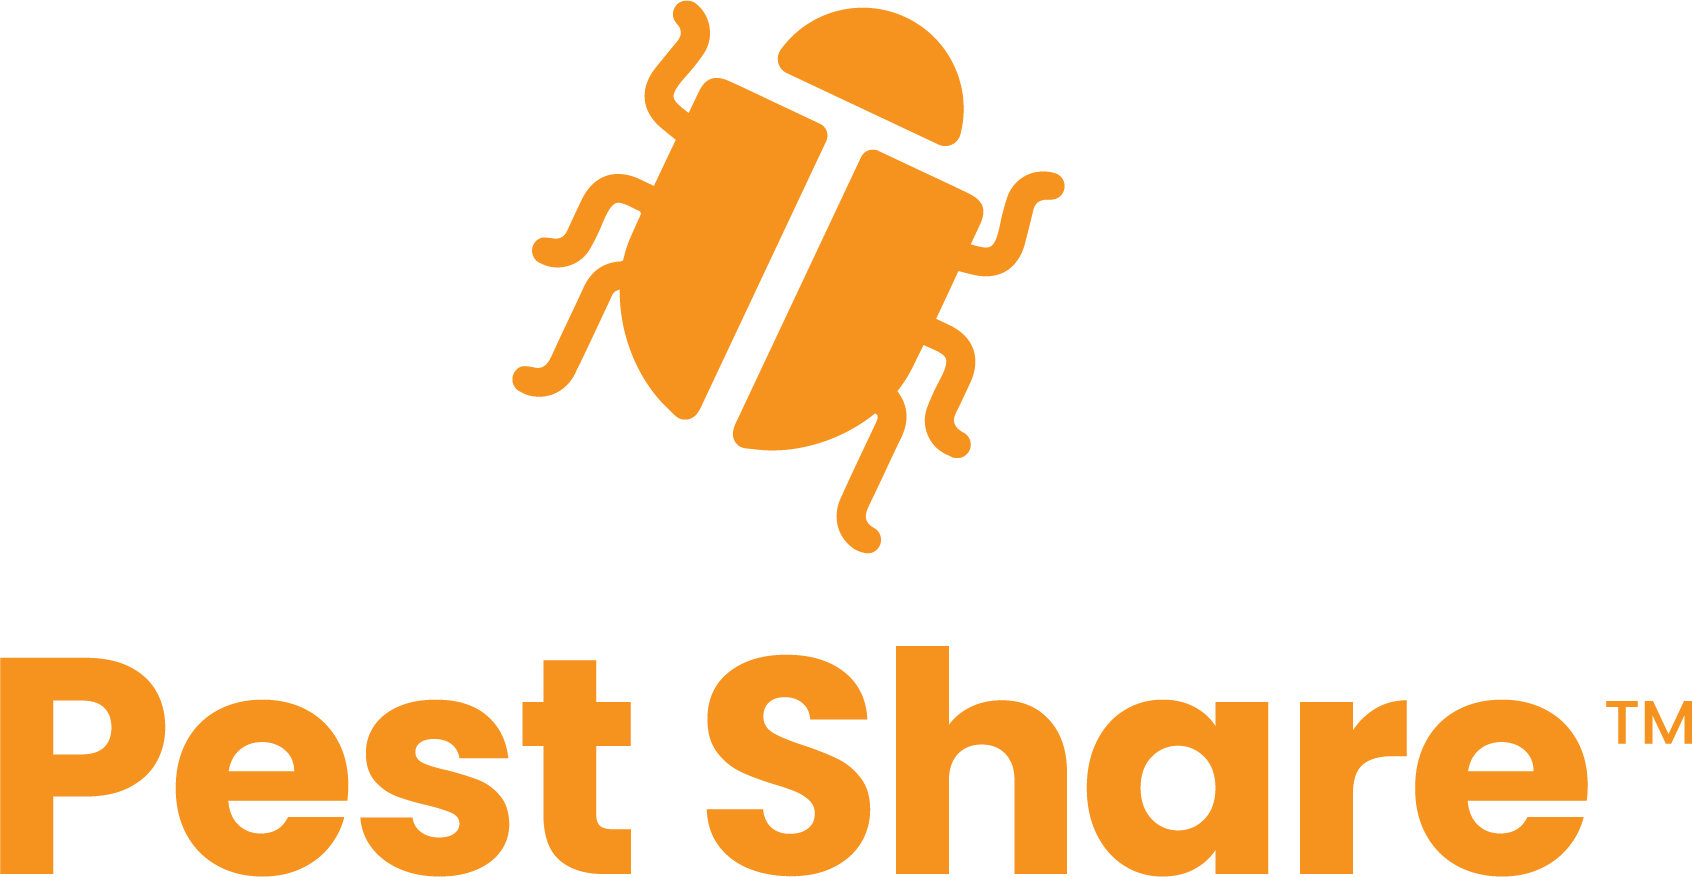 Pest Share Logo